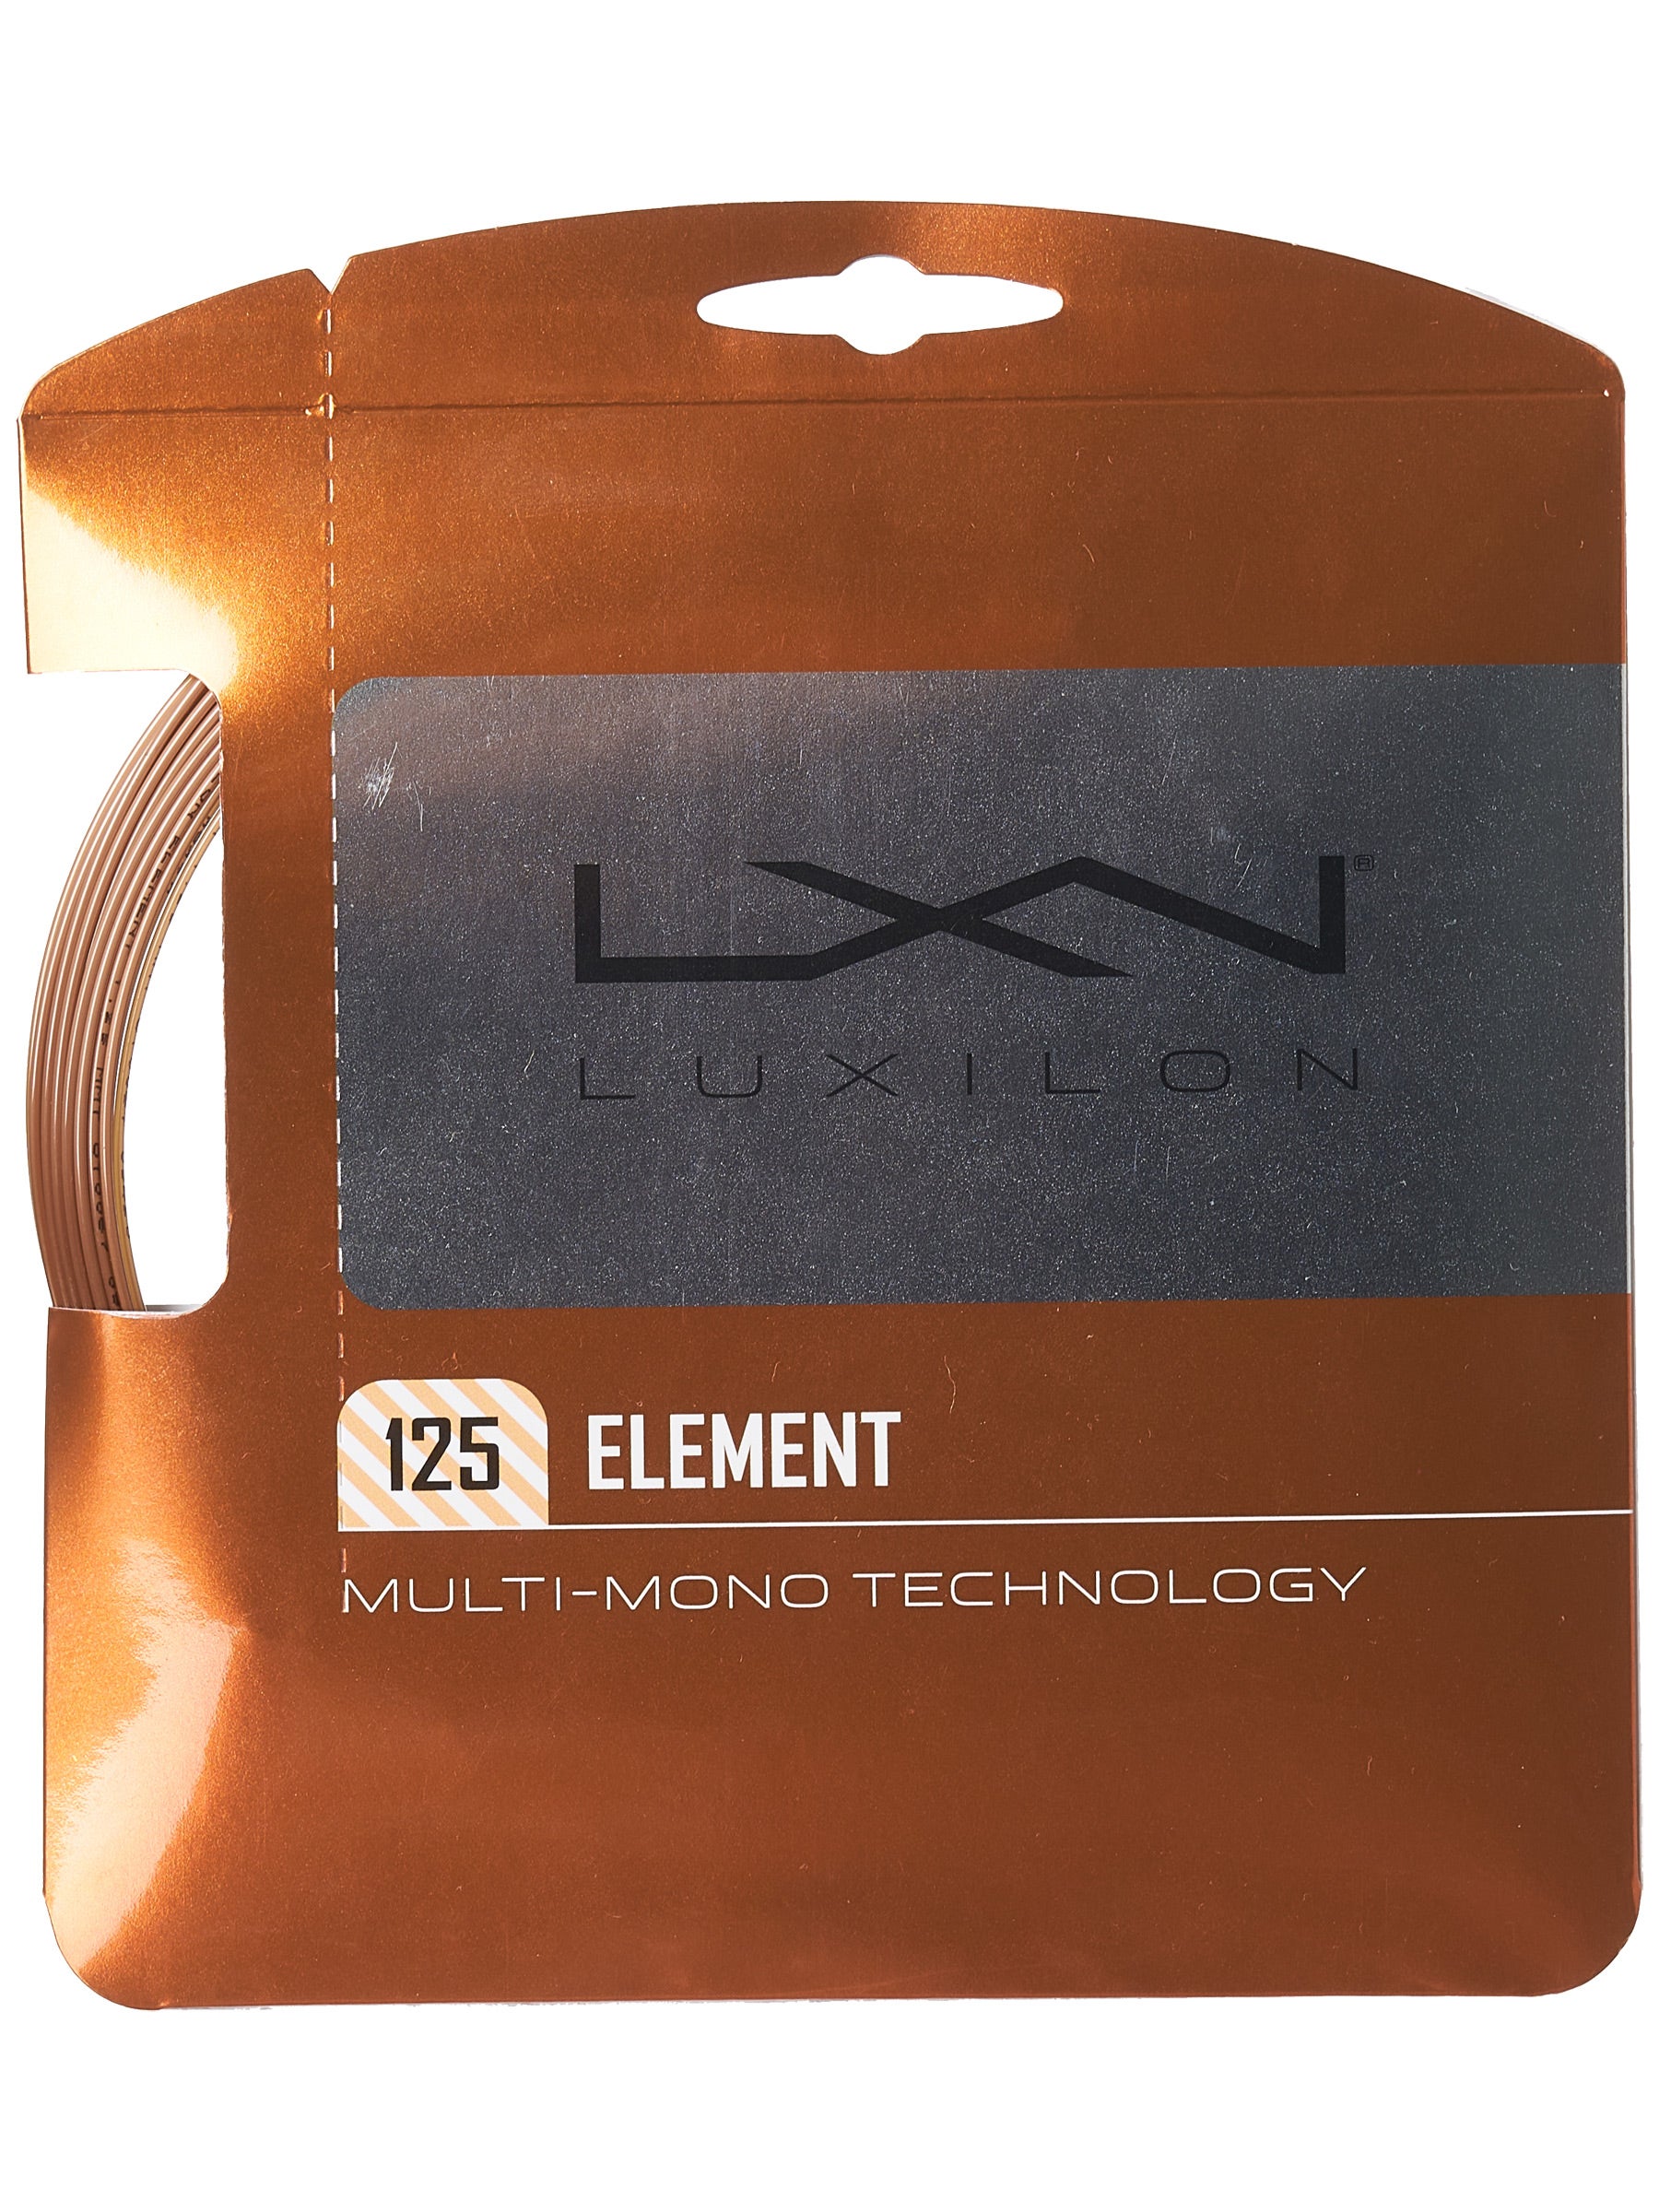 Luxilon Element tennis string review